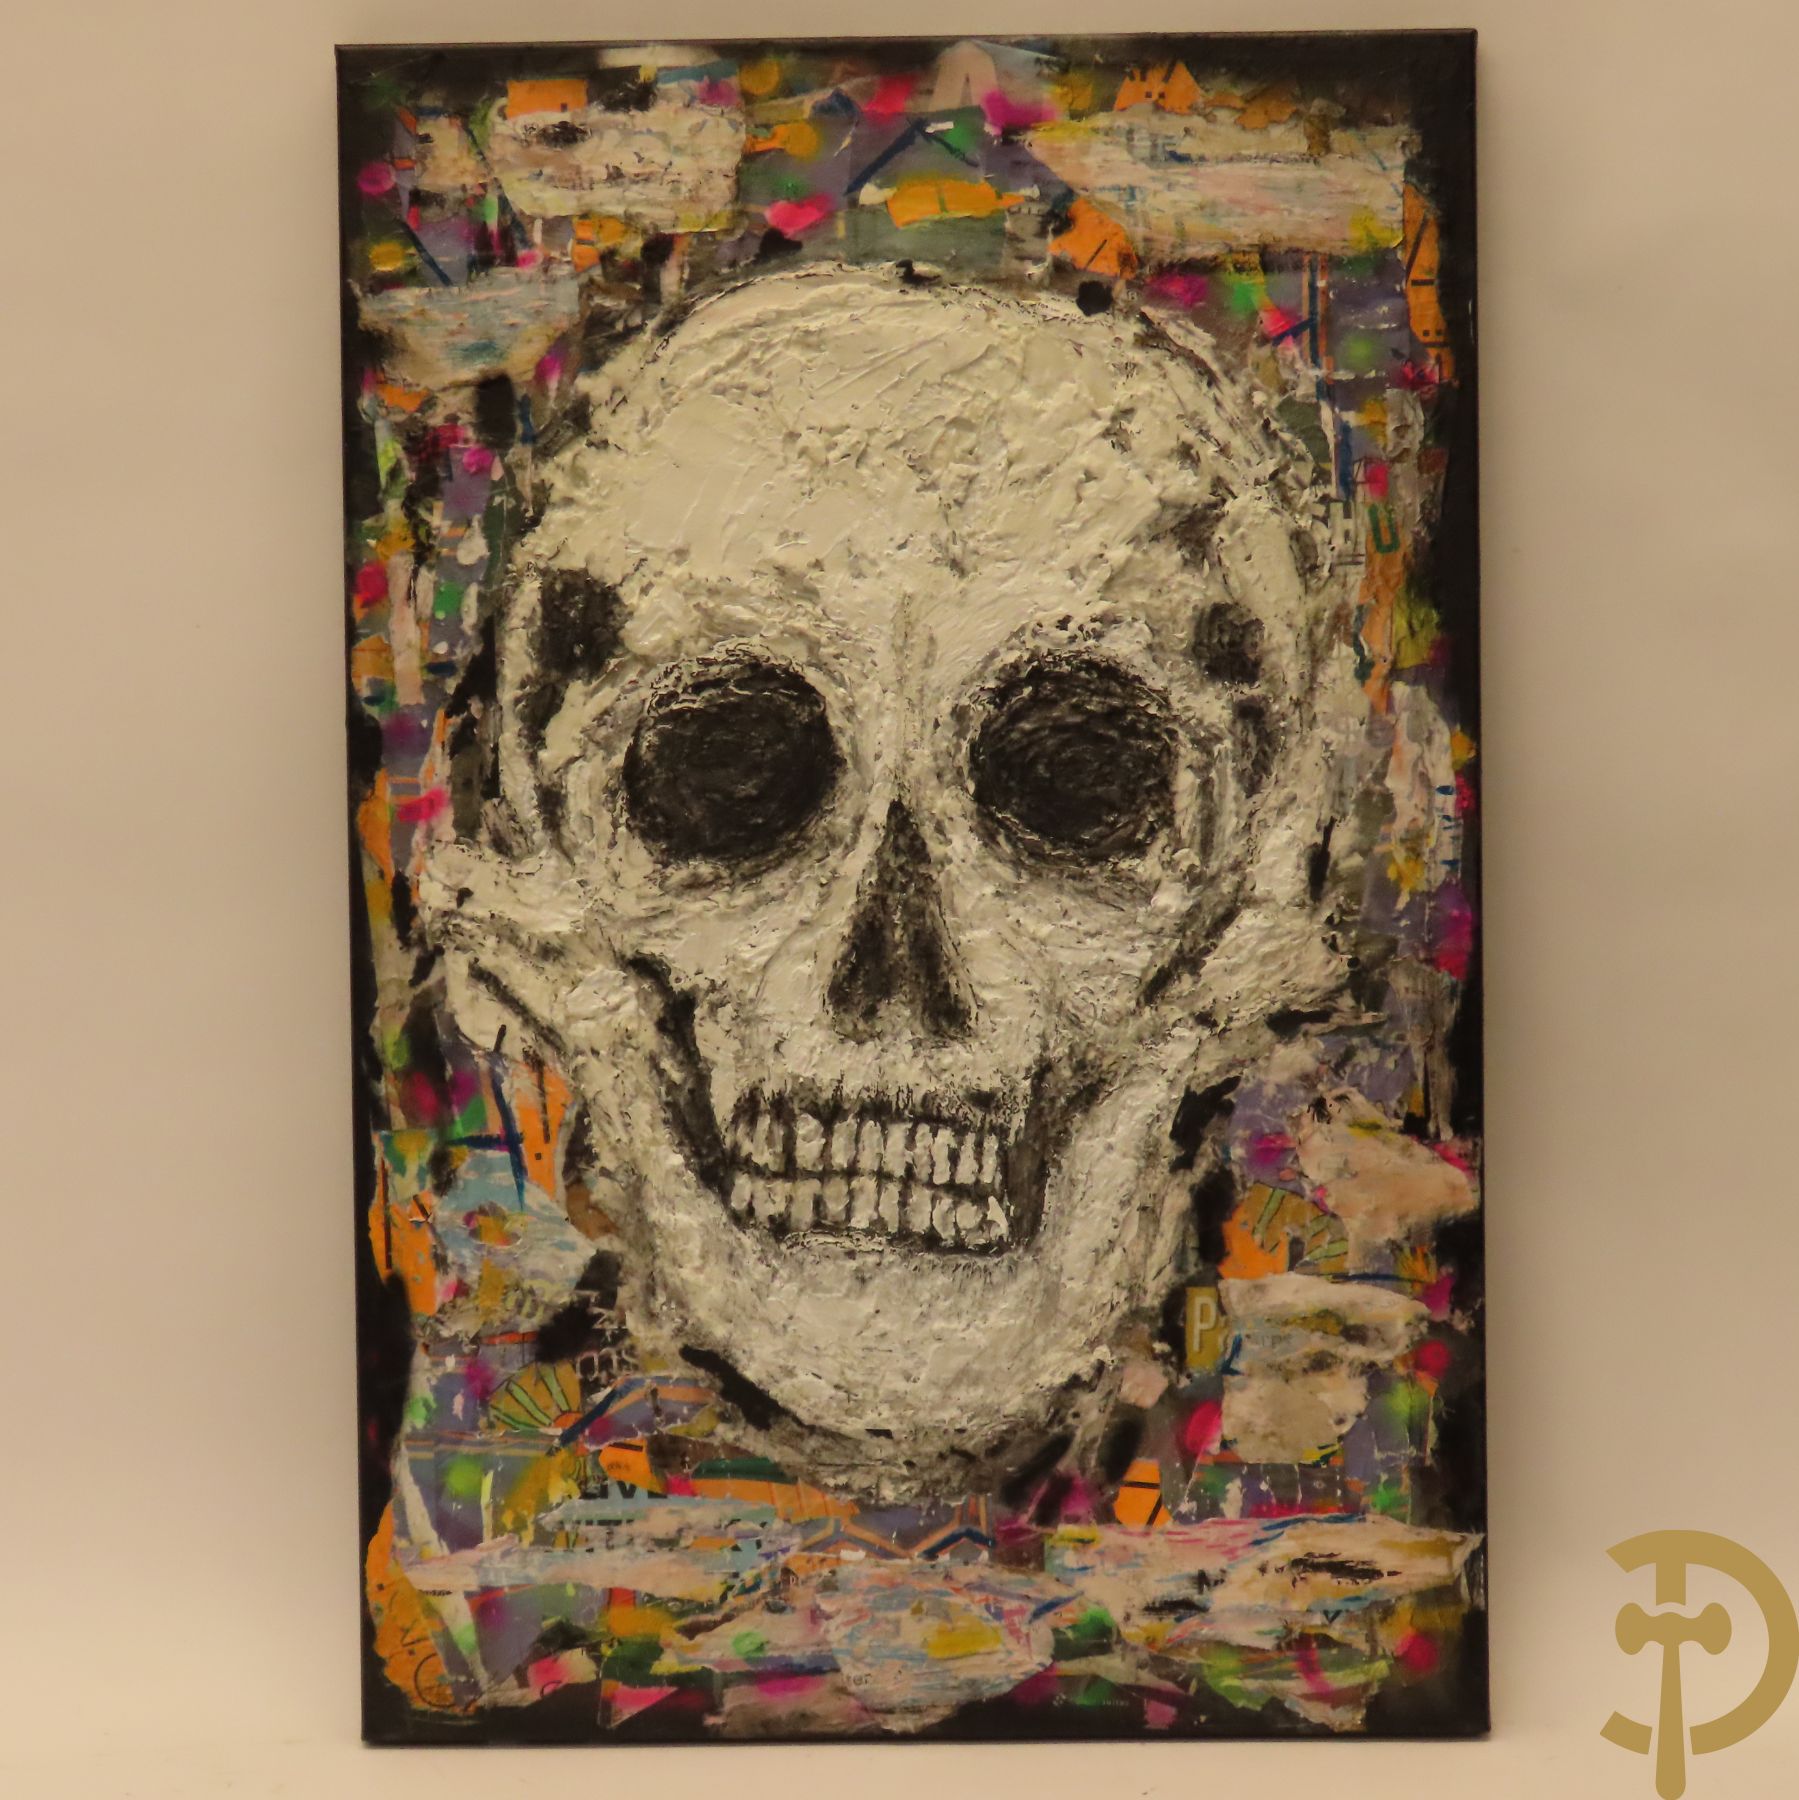 BONTINCK Igor get. 'Skull' mixed media contemporary art